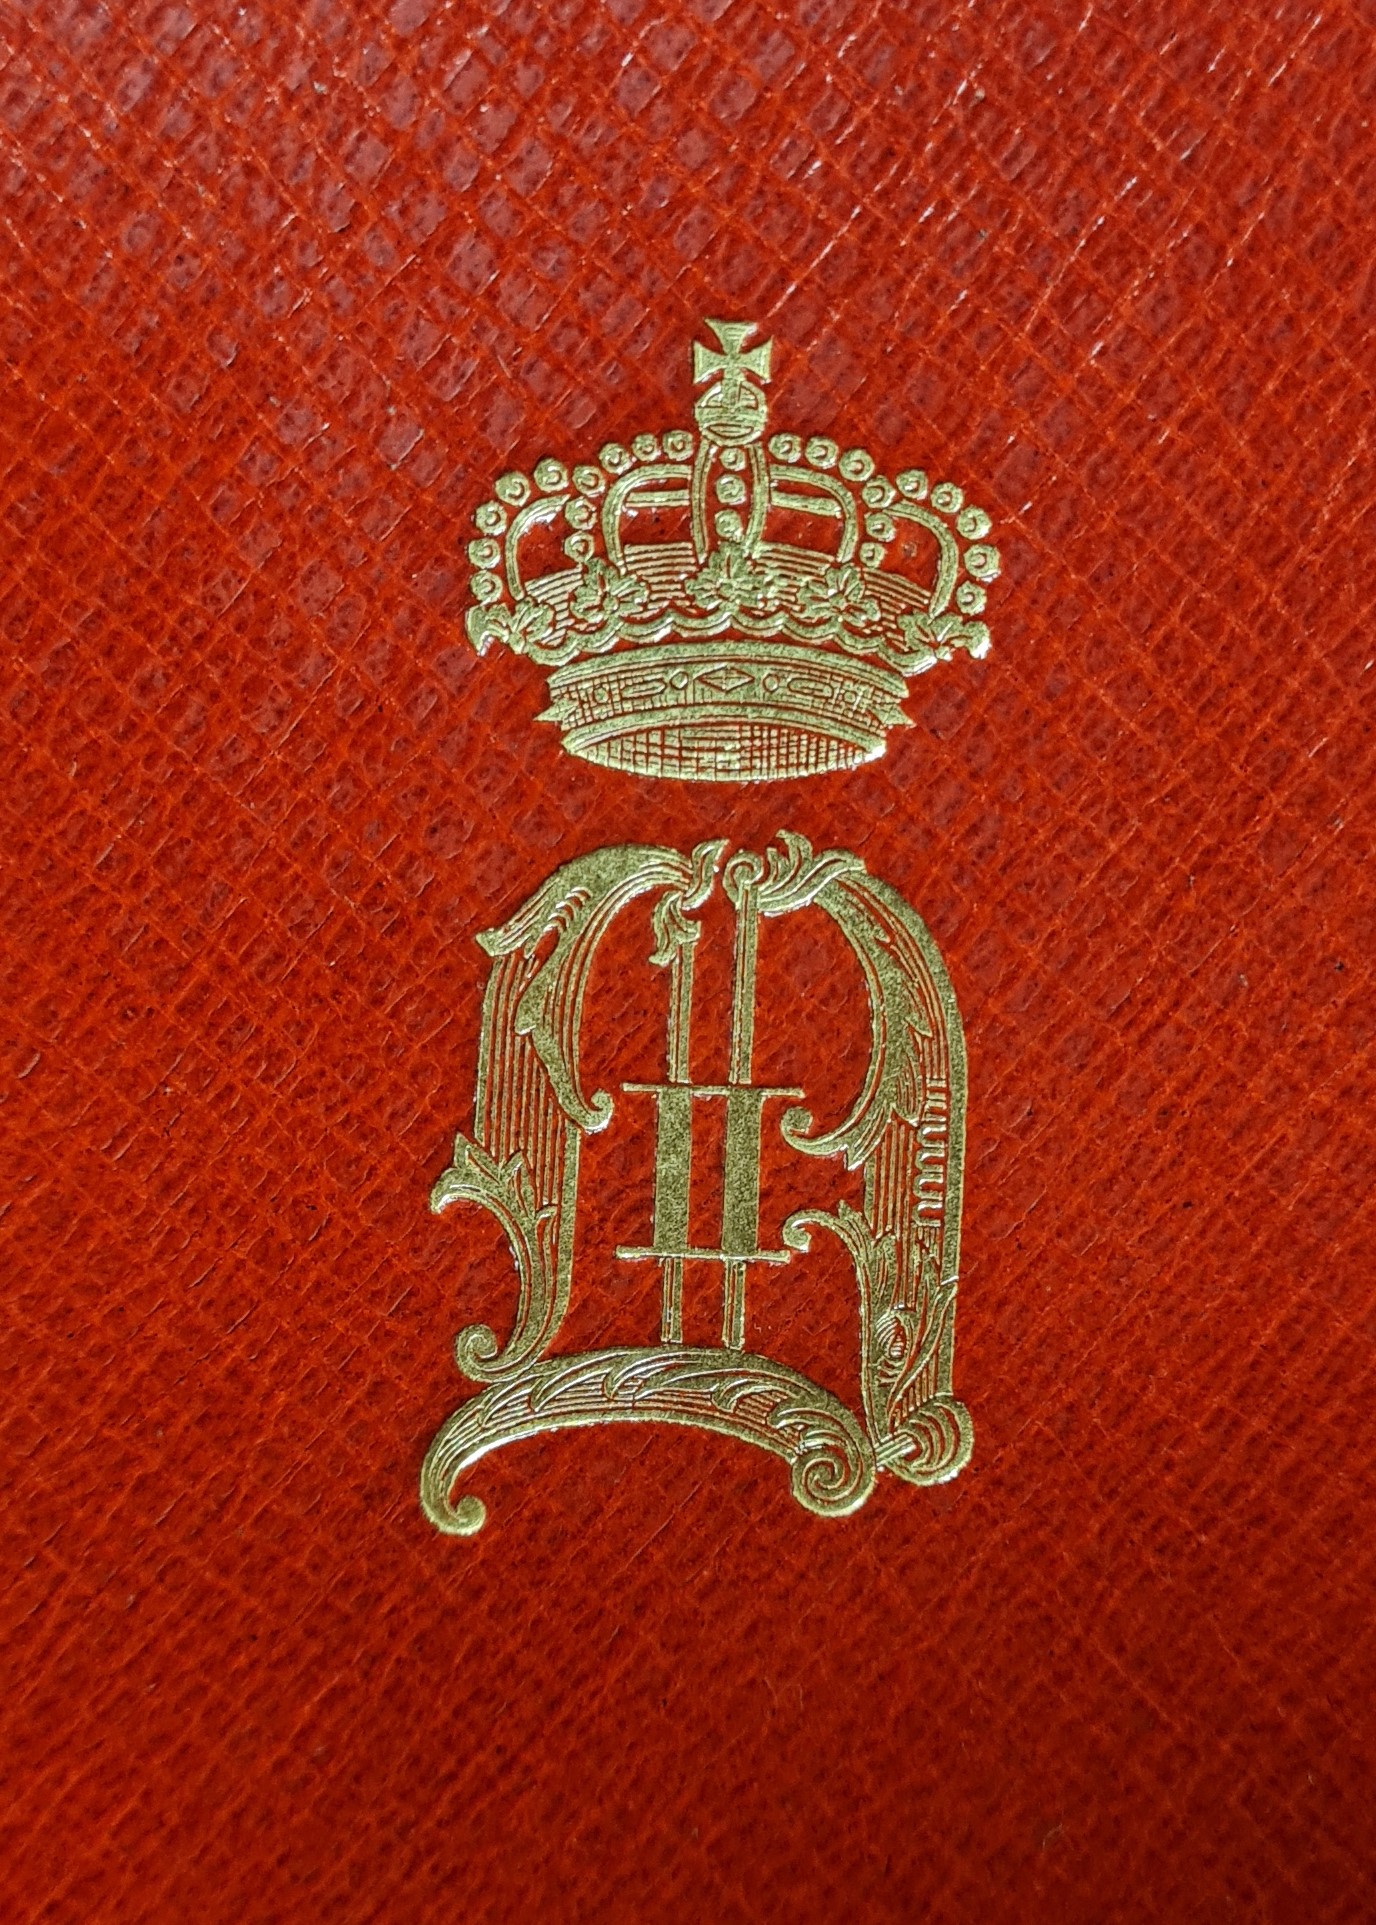 Färgfoto av ett förgyllt monogram med kungakrona på ett rött bokband